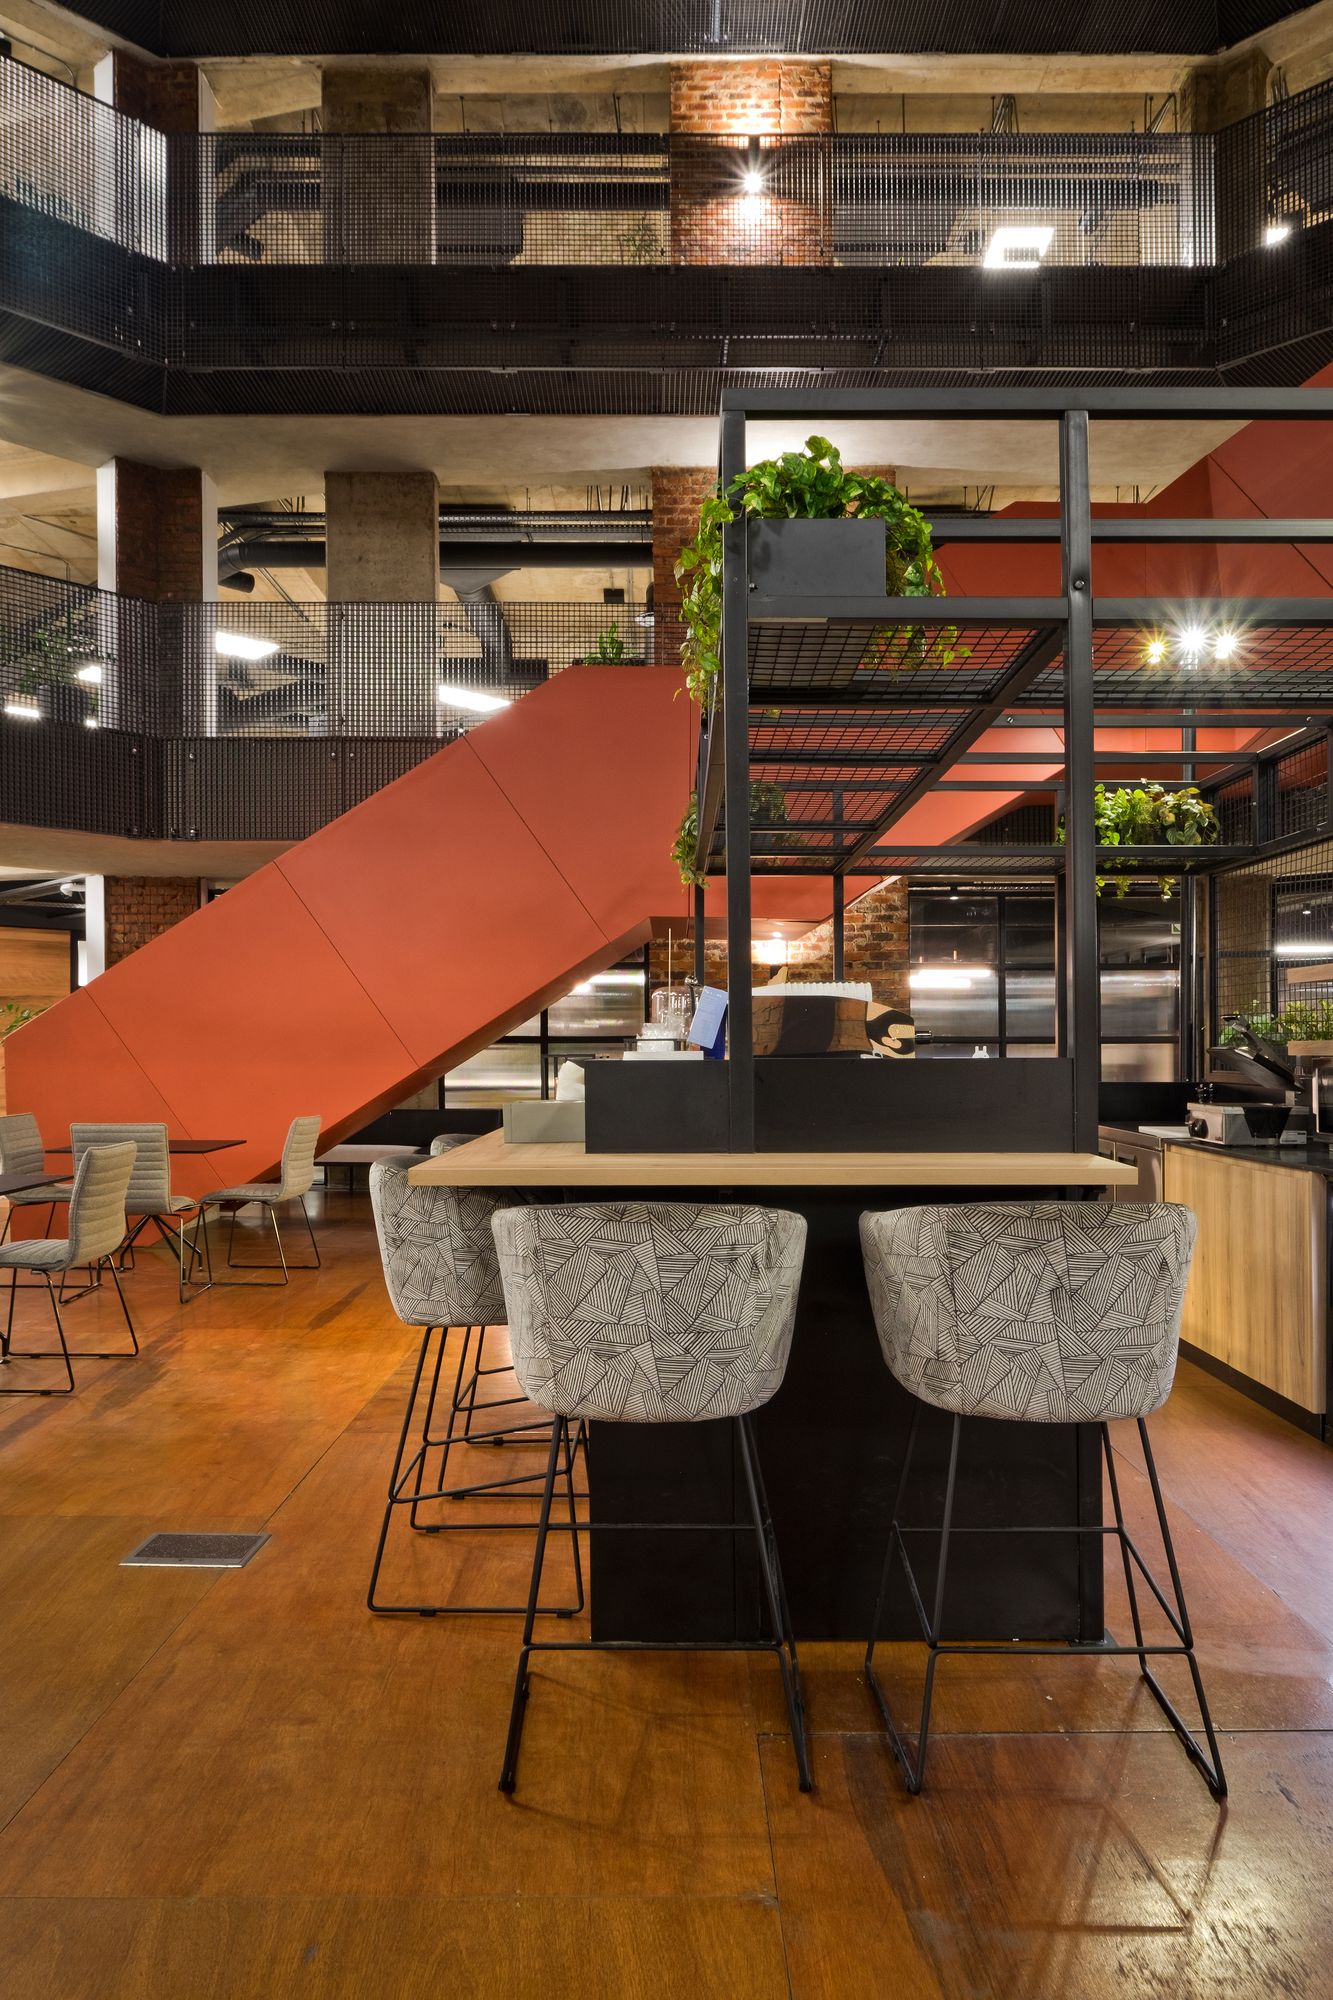 【Thungela のオフィスデザイン】- 南アフリカ, ヨハネスブルグのカフェスペース